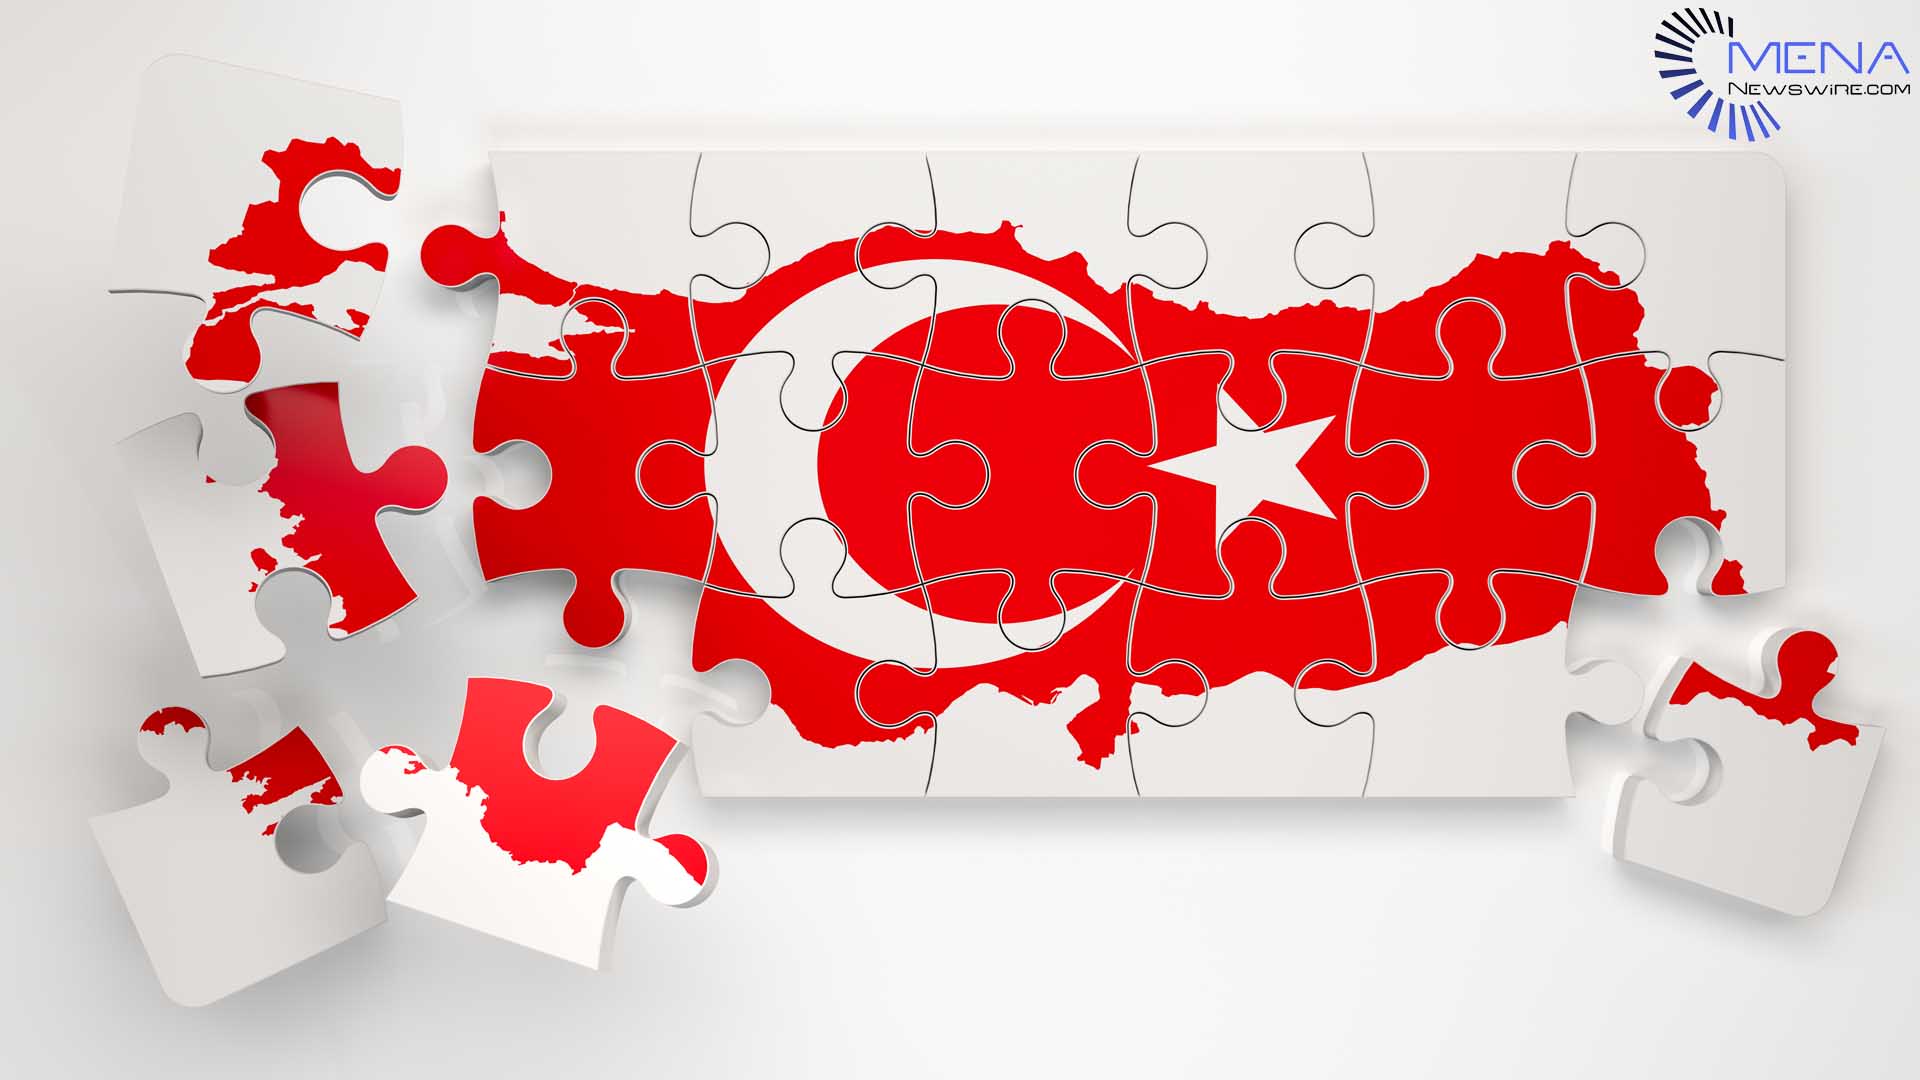 مینا نیوز وائر نے ترکی کی خبروں کی تقسیم کے ساتھ نئی بنیاد رکھی